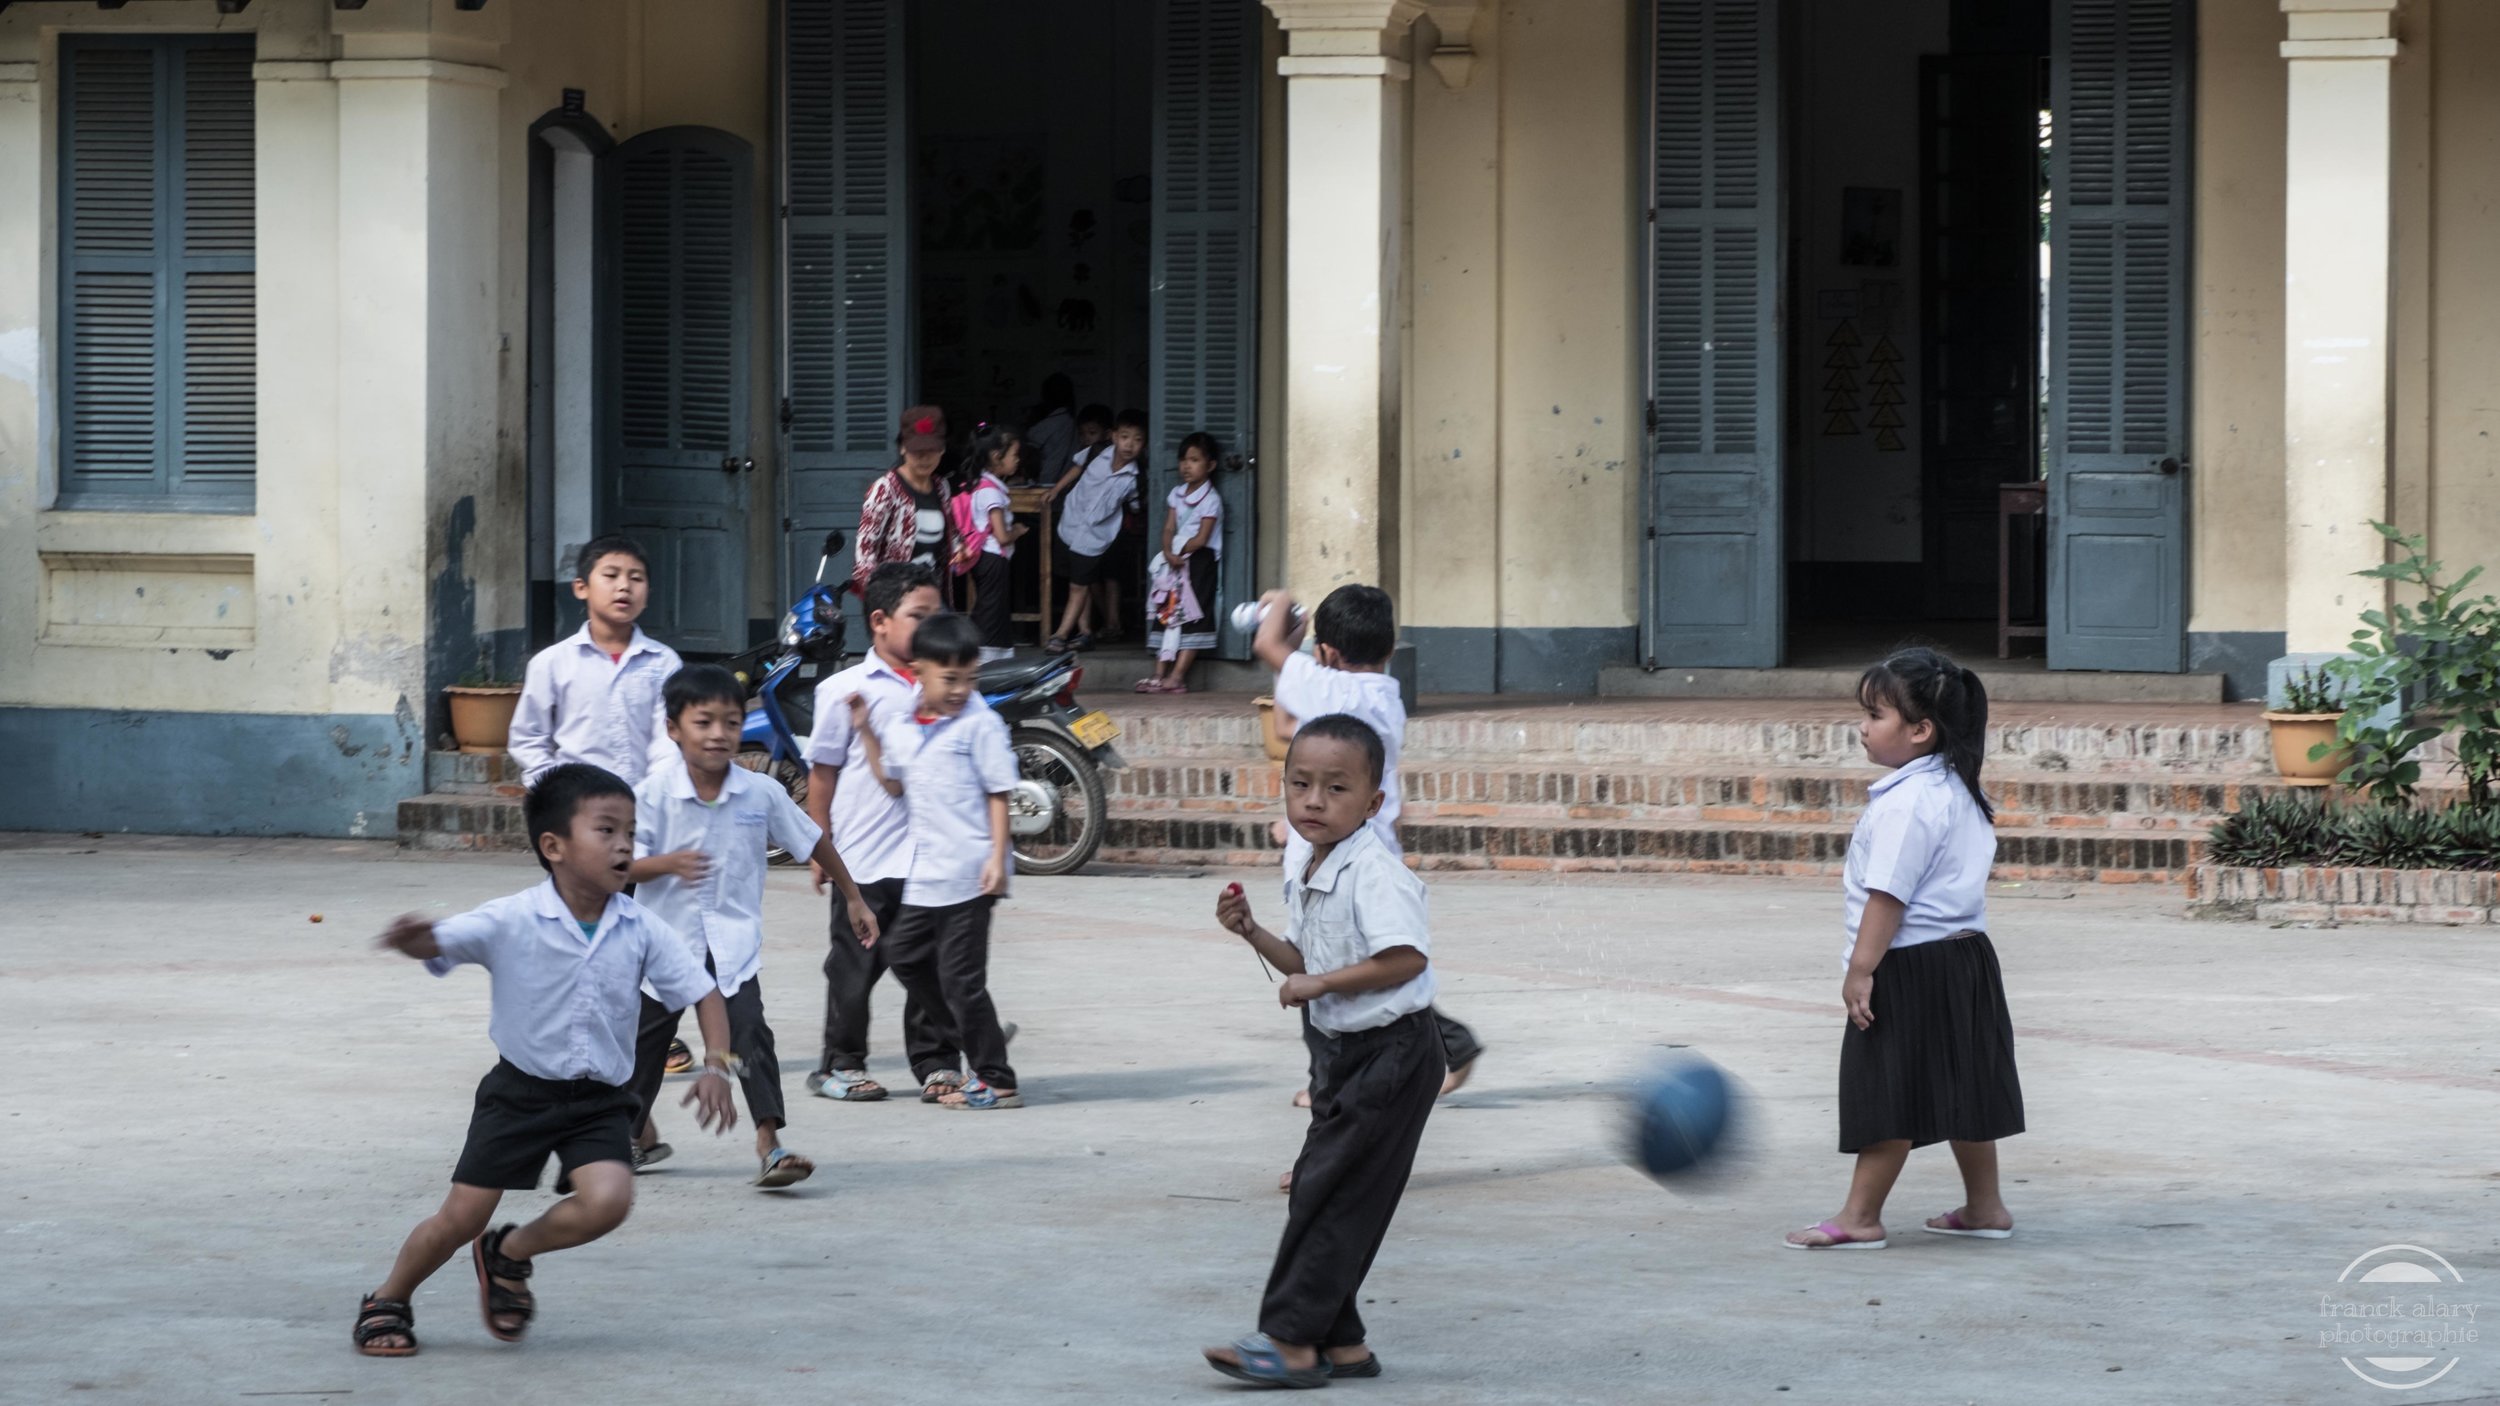   Cour d' école à Luang Prabang   Le Laos est un pays pauvre et le budget consacré à l'éducation laisse à désirer même si des améliorations ont été notées au cours de ces dernières années. La fréquentation scolaire reste encore inégale, les provinces